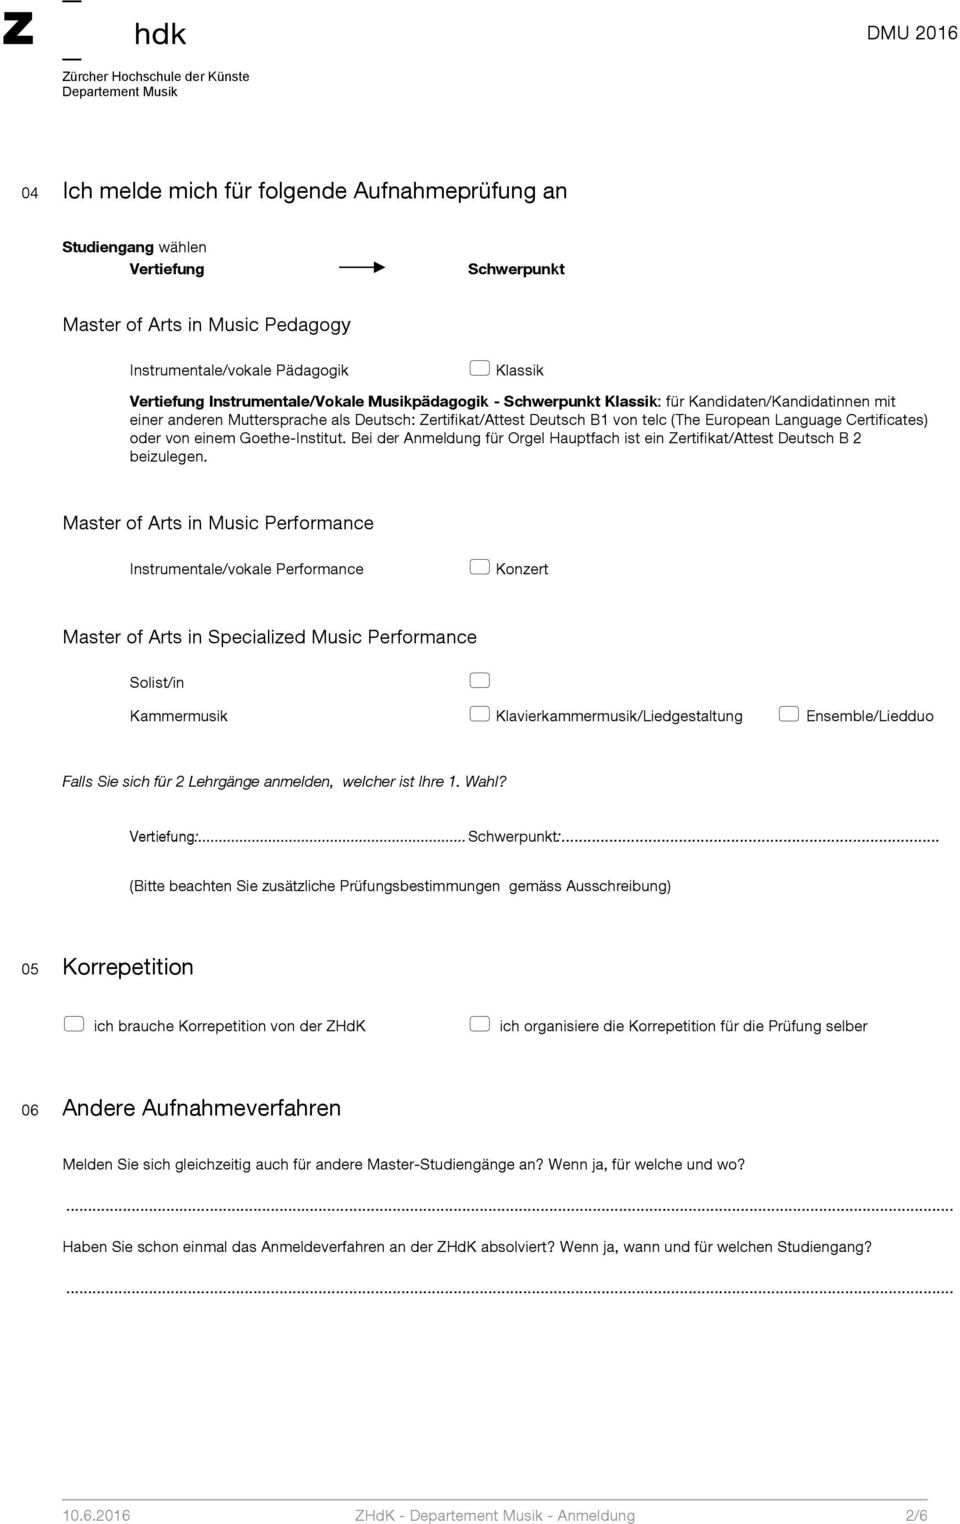 einem Goethe-Institut. Bei der Anmeldung für Orgel Hauptfach ist ein Zertifikat/Attest Deutsch B 2 beizulegen.